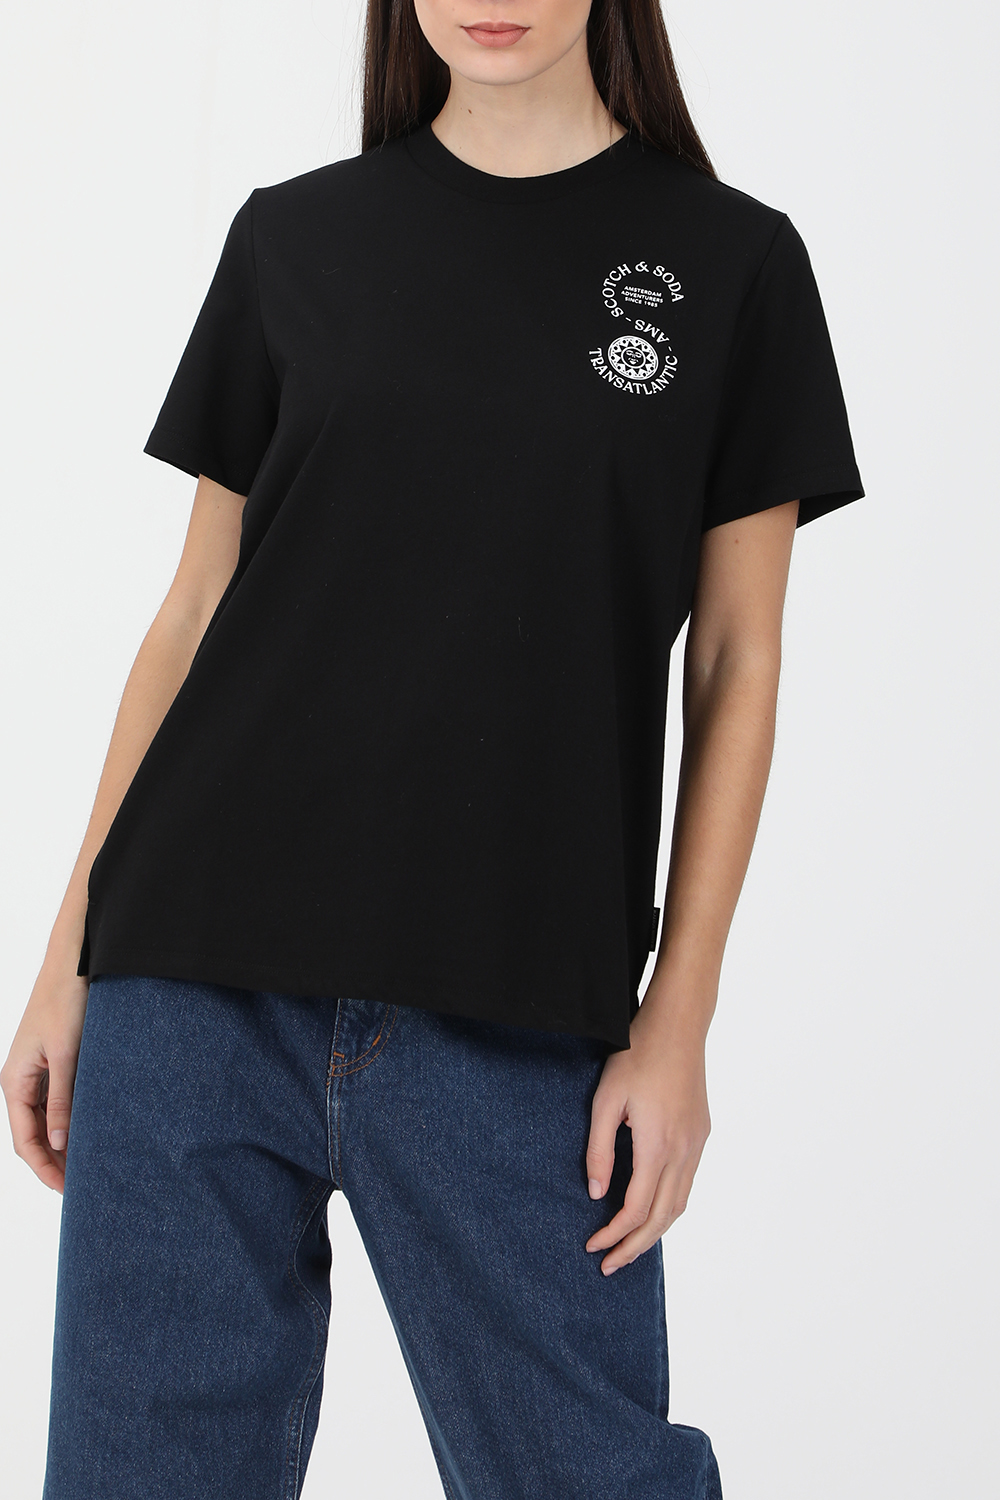 SCOTCH & SODA – Γυναικεία κοντομάνικη μπλούζα SCOTCH & SODA μαύρη 1821035.0-7171